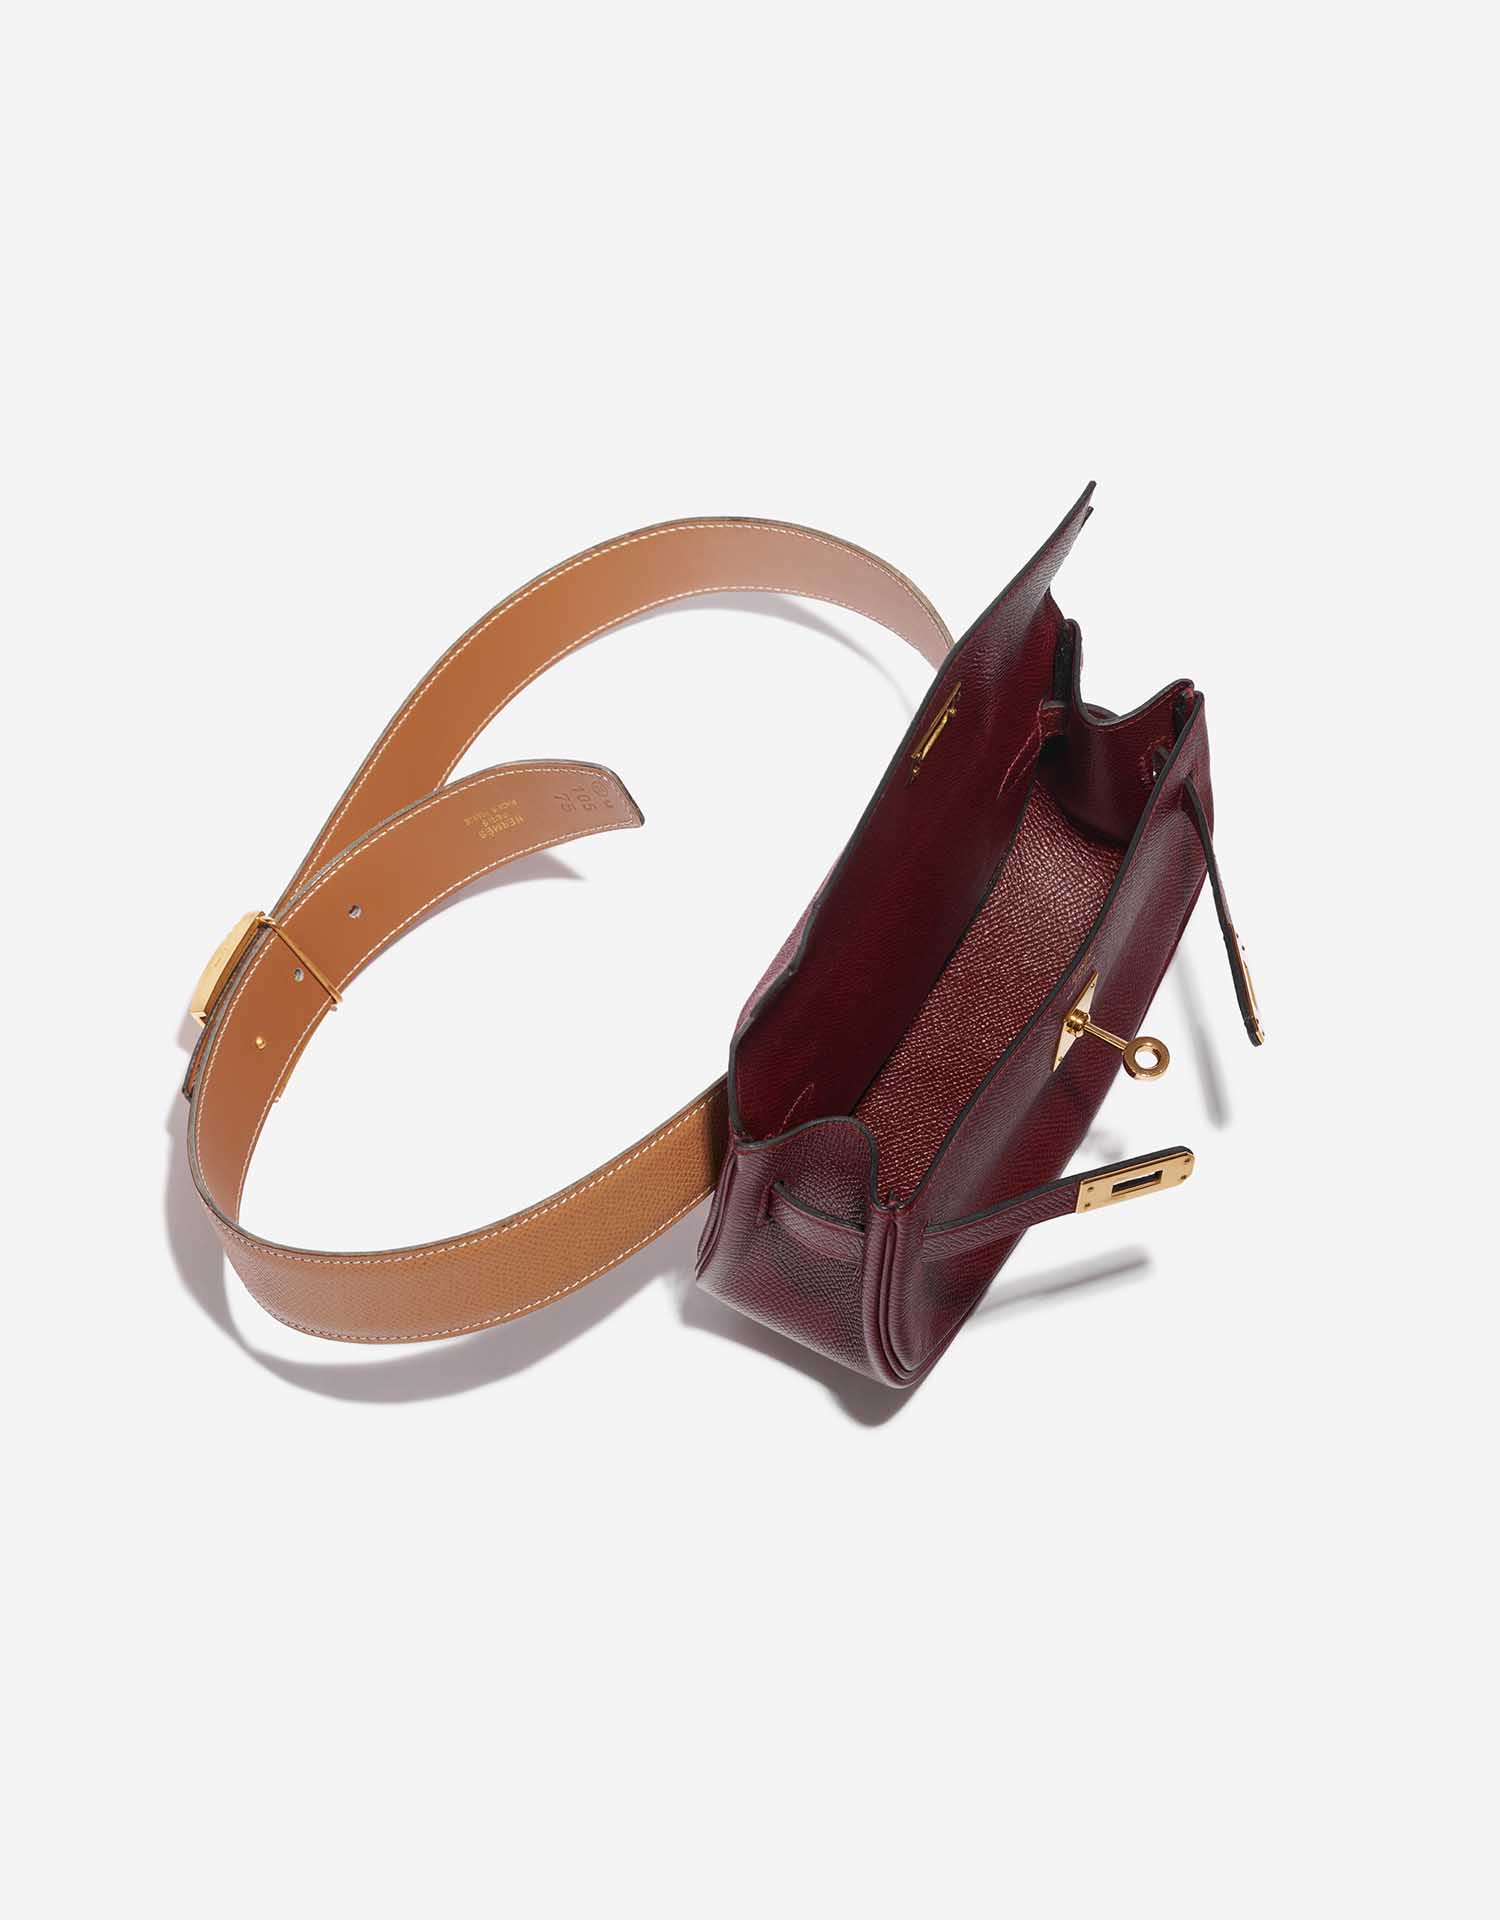 Sac Hermès d'occasion Kelly Pochette Courchevel Bordeaux / Gold Brown, Red Inside | Vendez votre sac de créateur sur Saclab.com